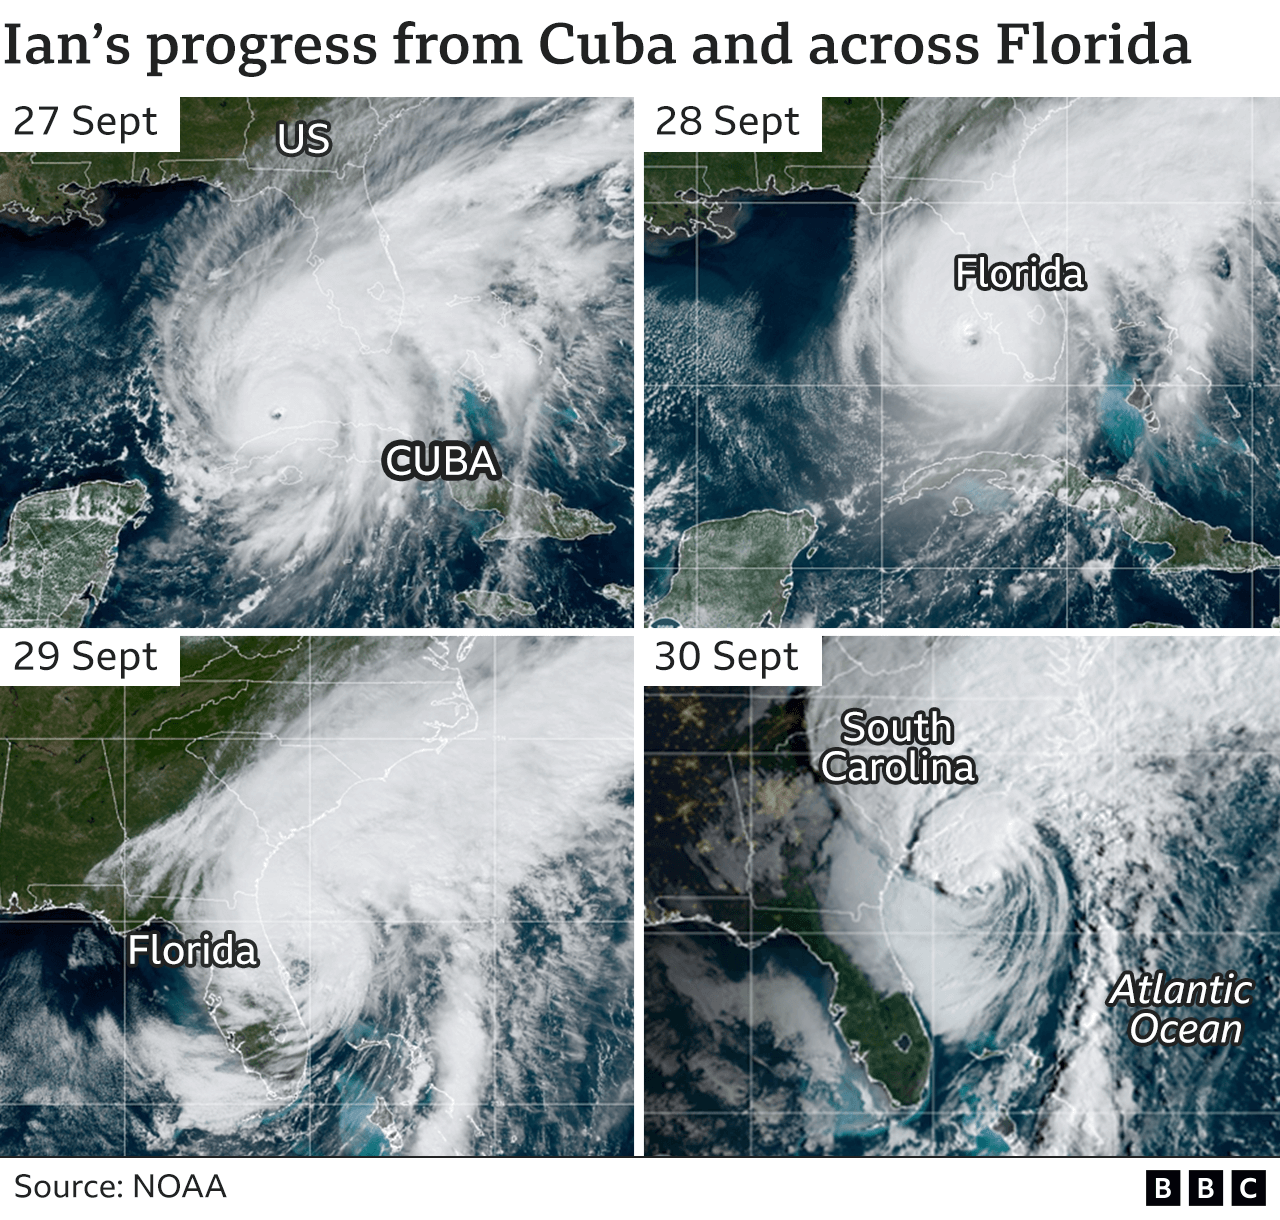 Ian's progress from Cuba to Florida